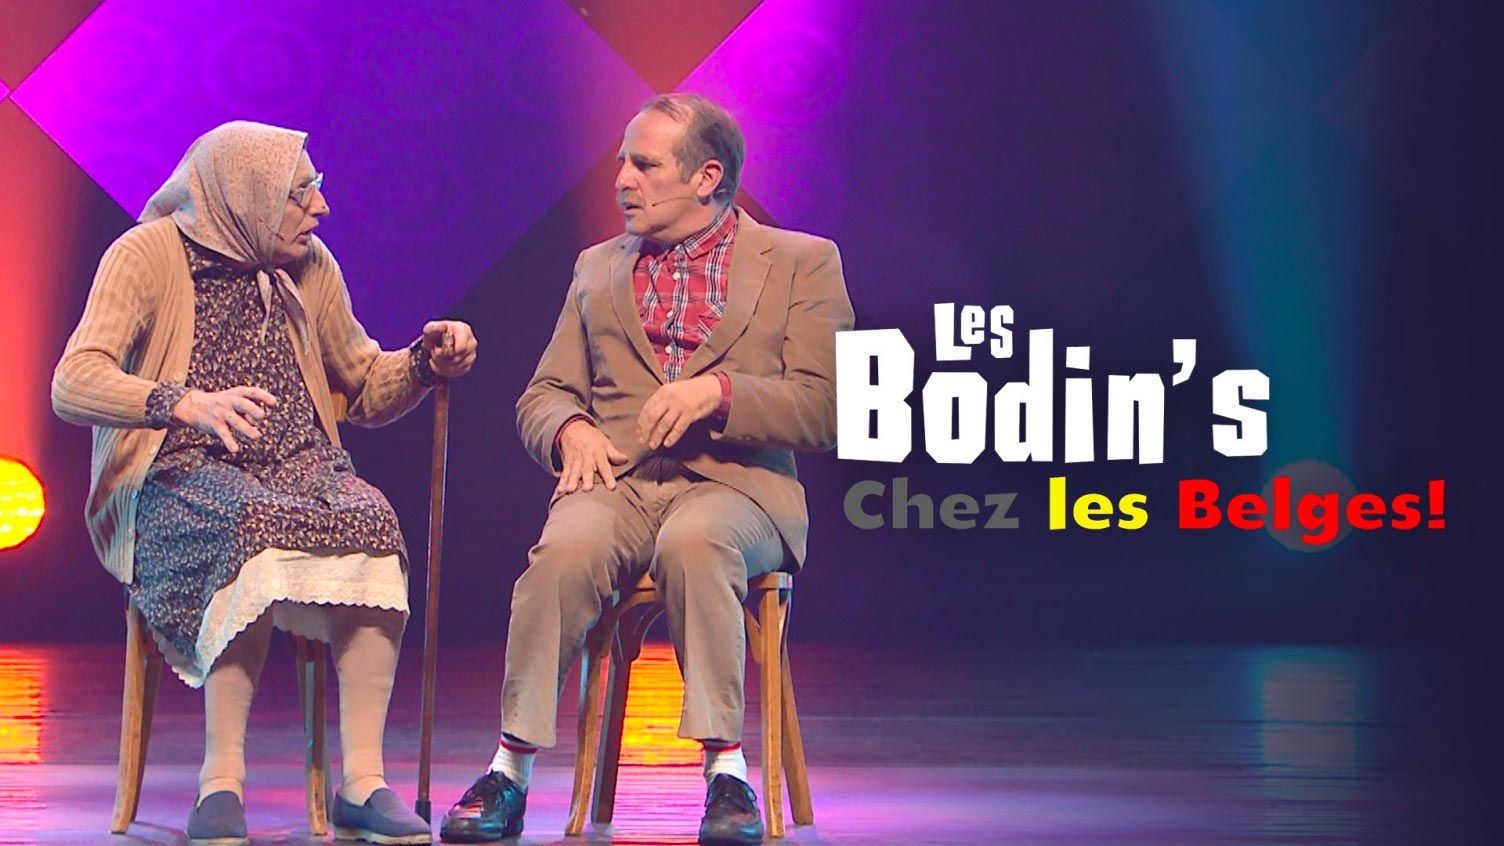 affiche du film Les Bodin's chez les Belges